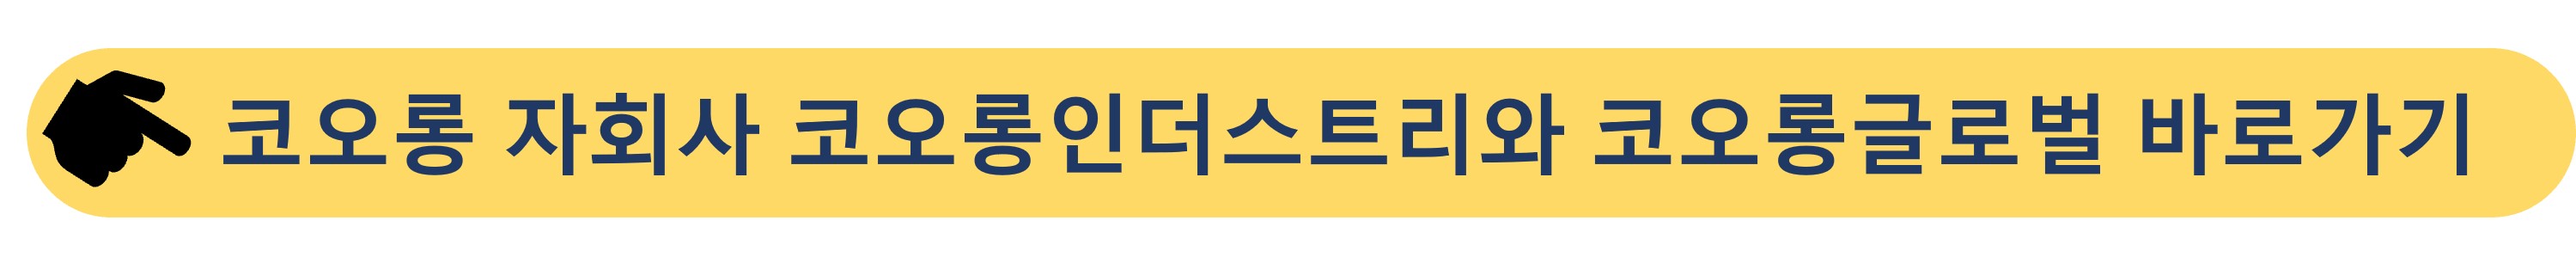 코오롱그룹-자회사